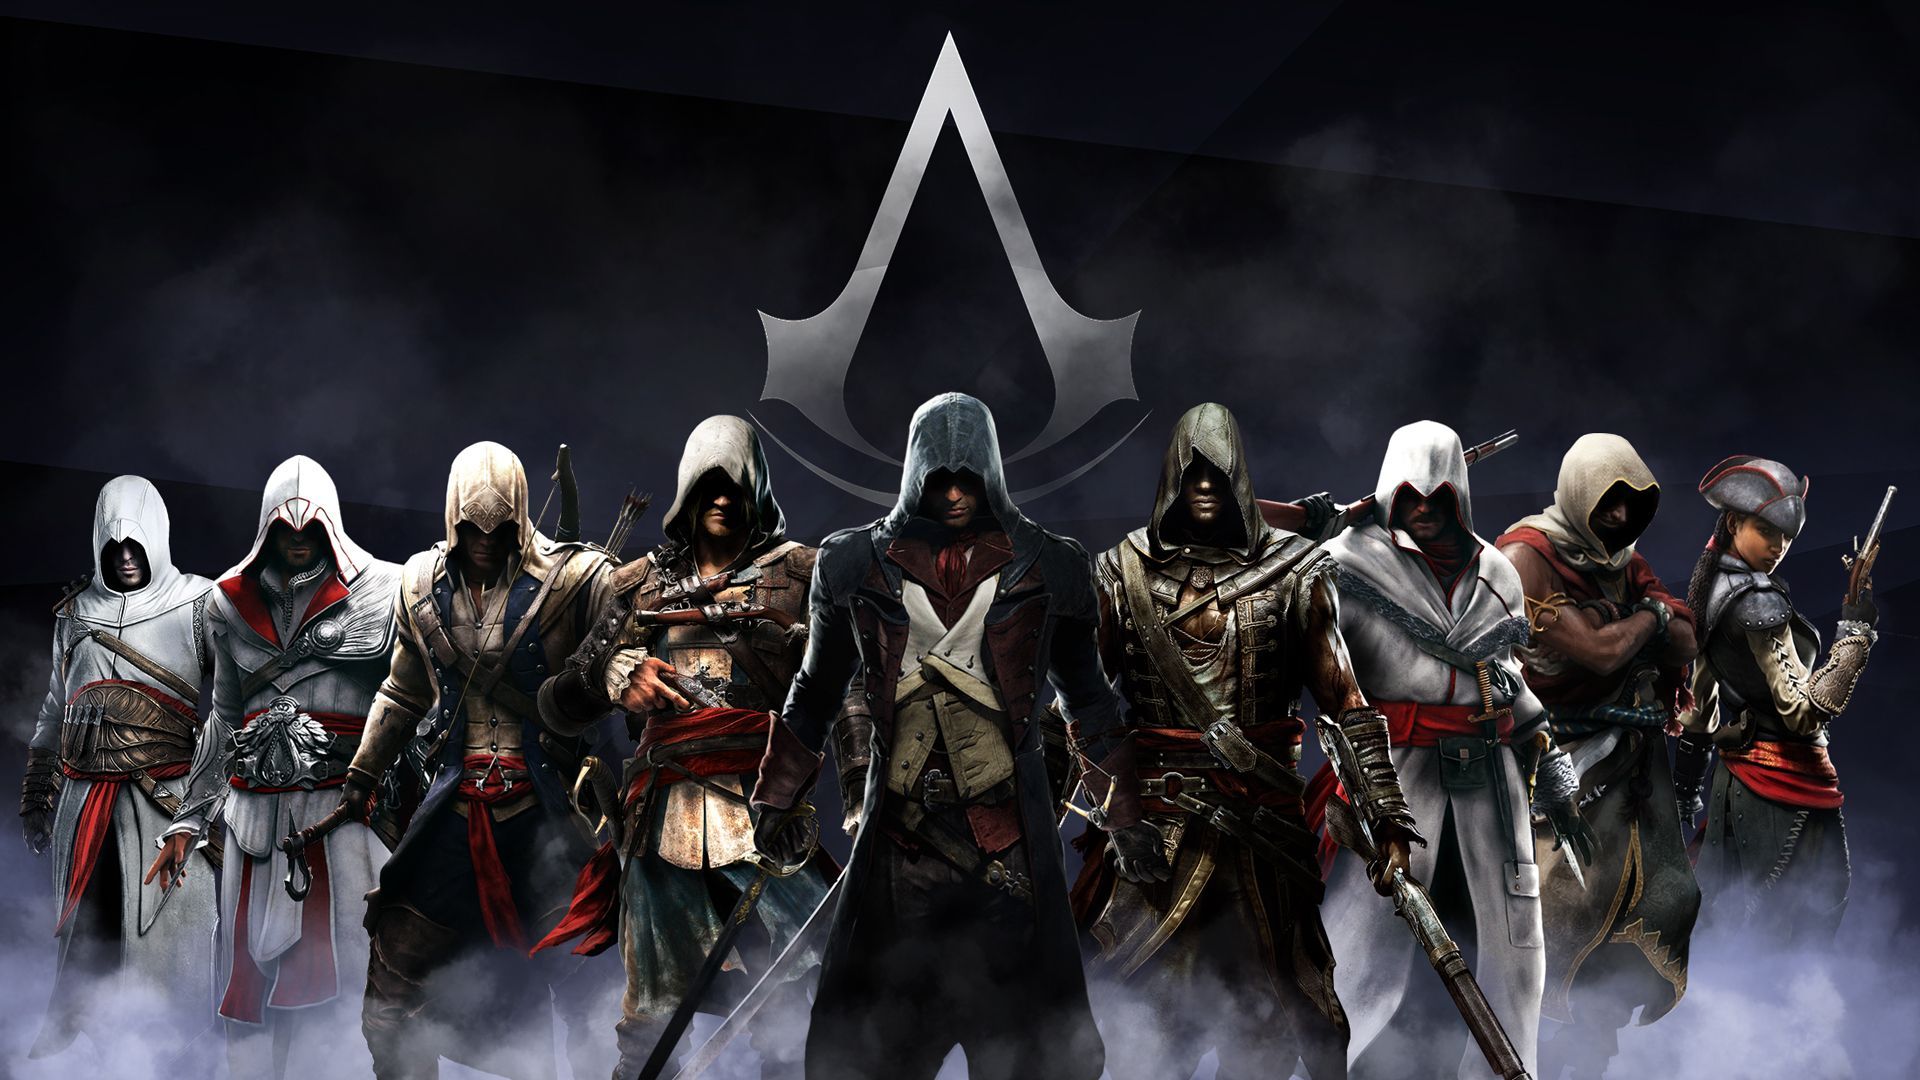 Assassins creed wallpaper all assassins